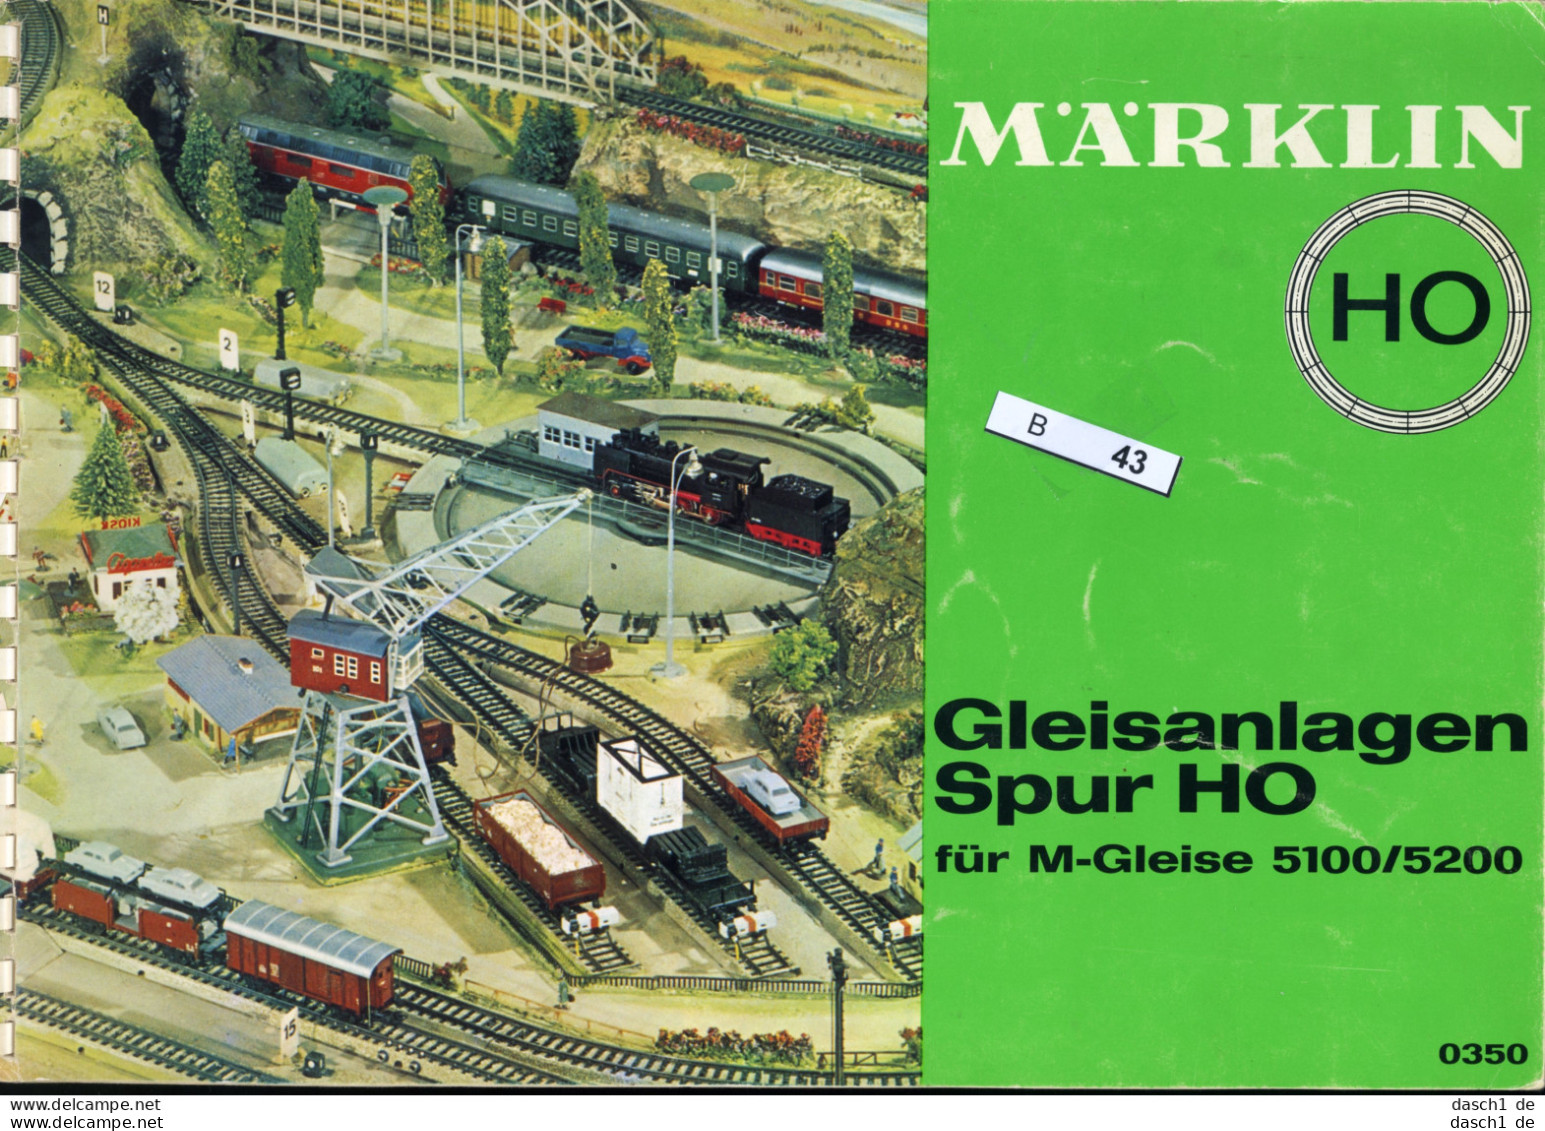 Märklin Gleisanlagen Spur H0, B-043 - Giocattoli & Miniature